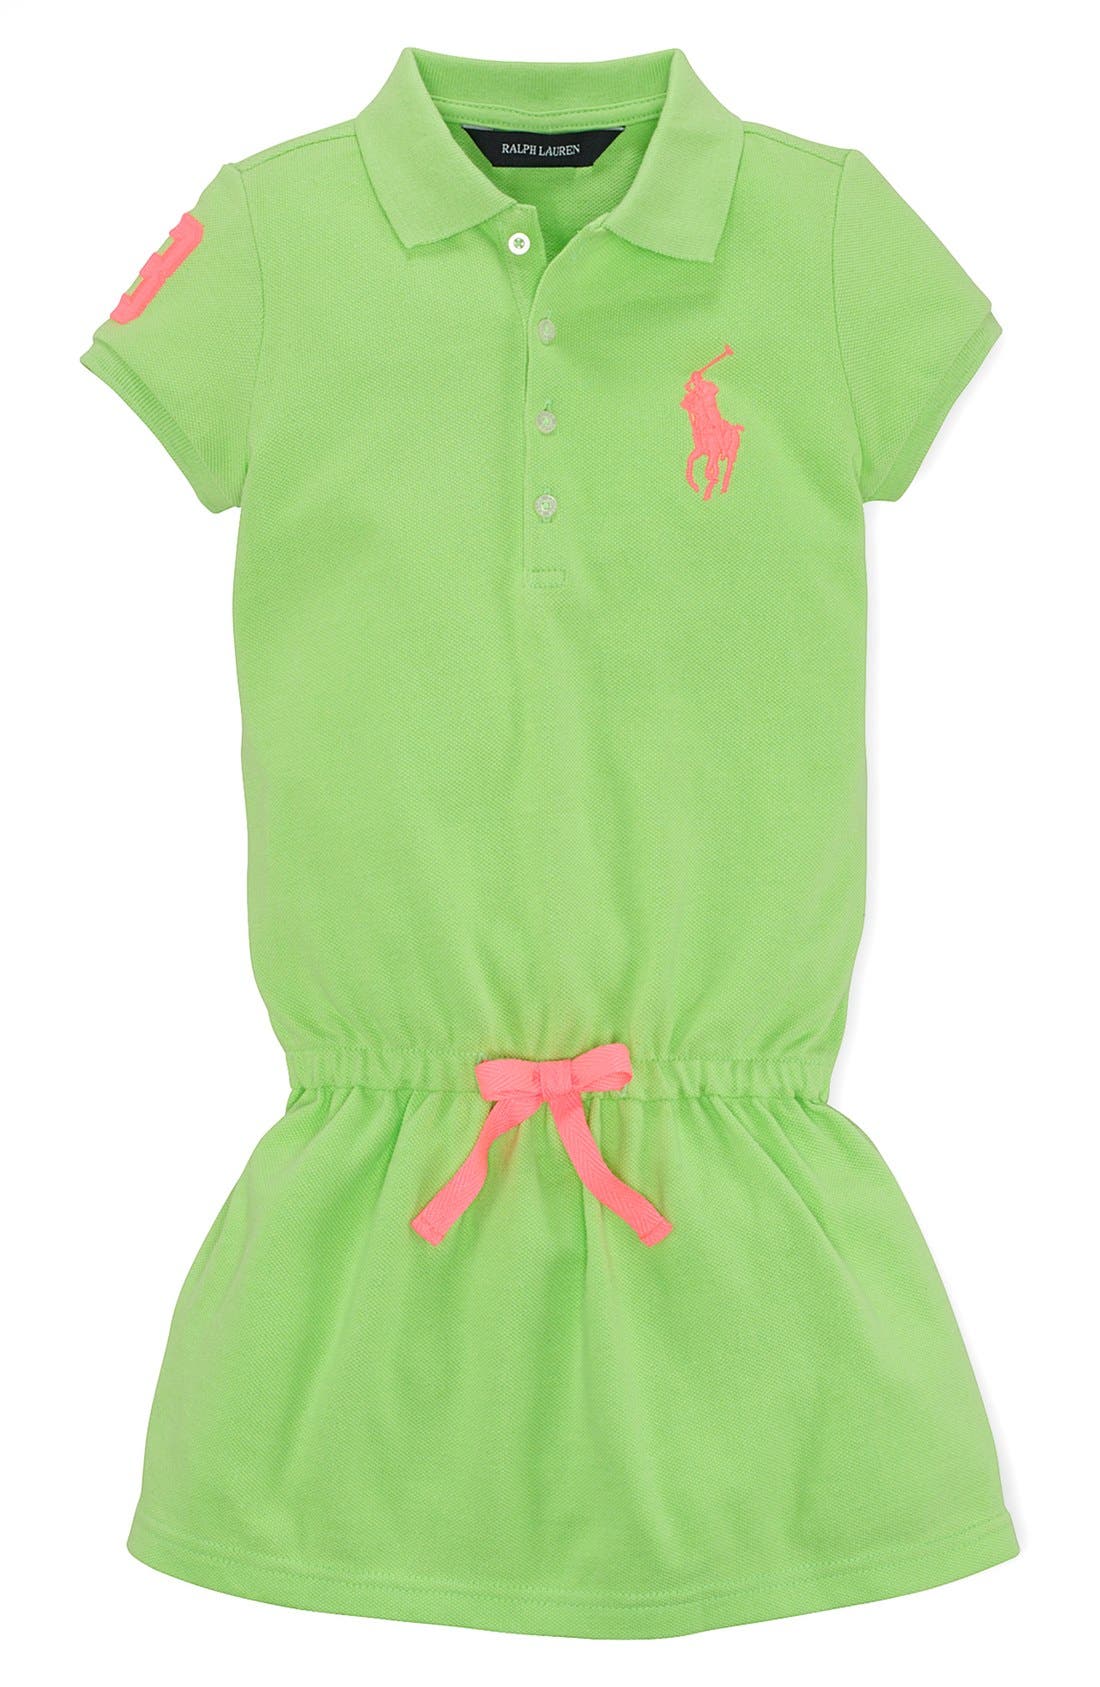 toddler girl polo dress